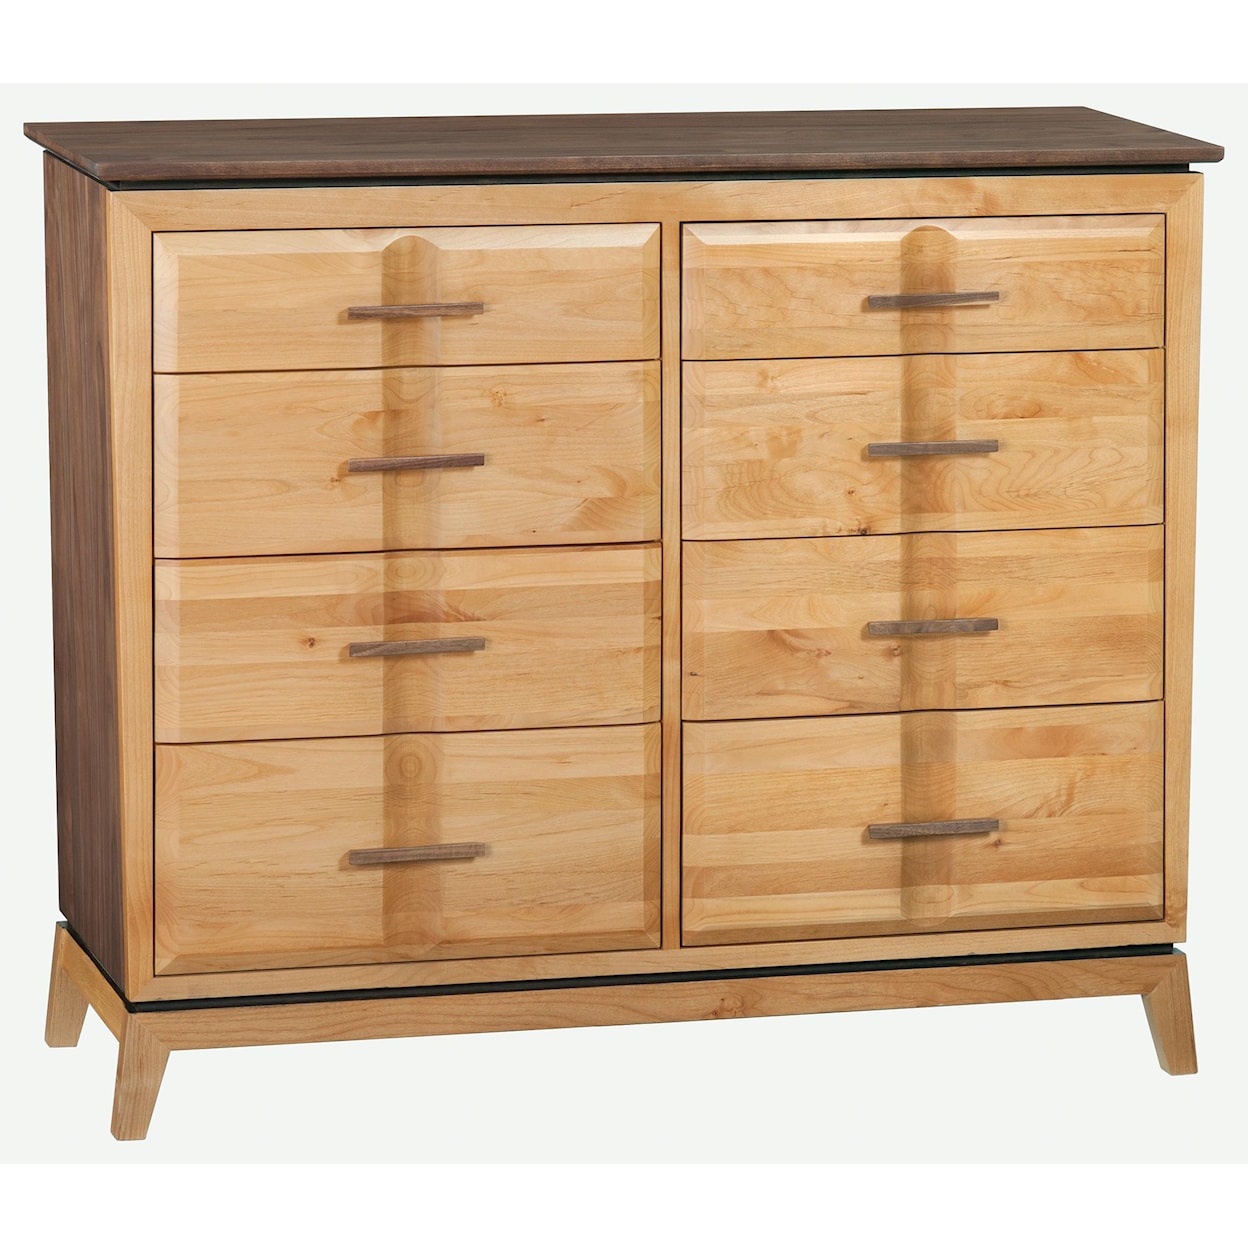 Whittier Wood Addison Dresser